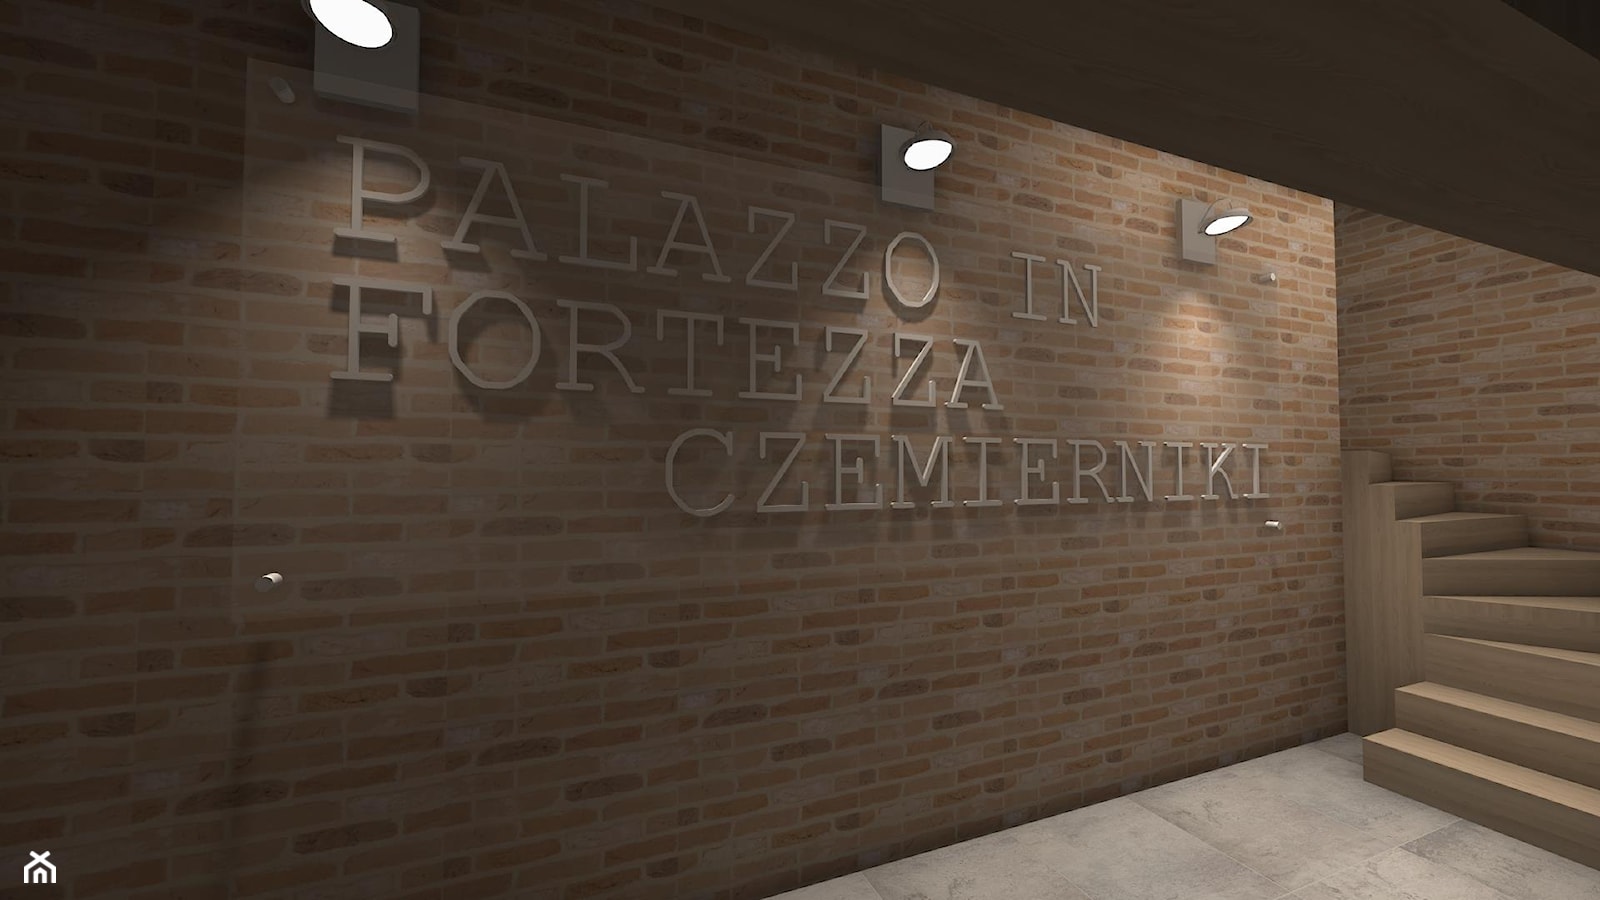 Palazzo in fortezza - Biuro, styl nowoczesny - zdjęcie od Piękne Wnętrza Agata i Waldemar Smolińscy - Homebook